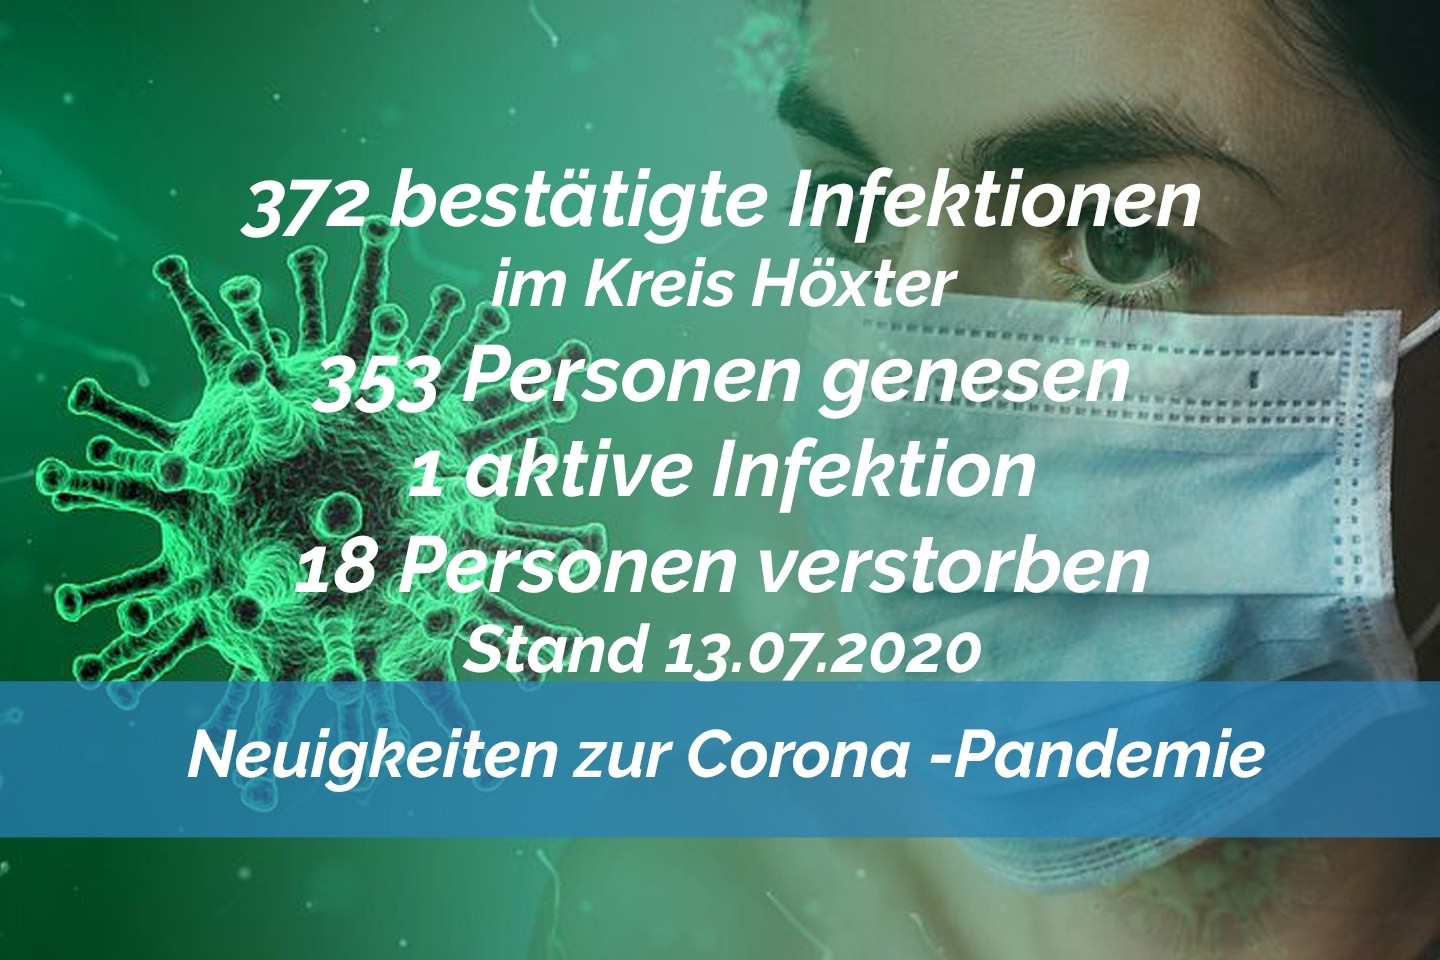 Update vom 13. Juli: 372 bestätigte Infektionen mit dem neuen Coronavirus im Kreis Höxter